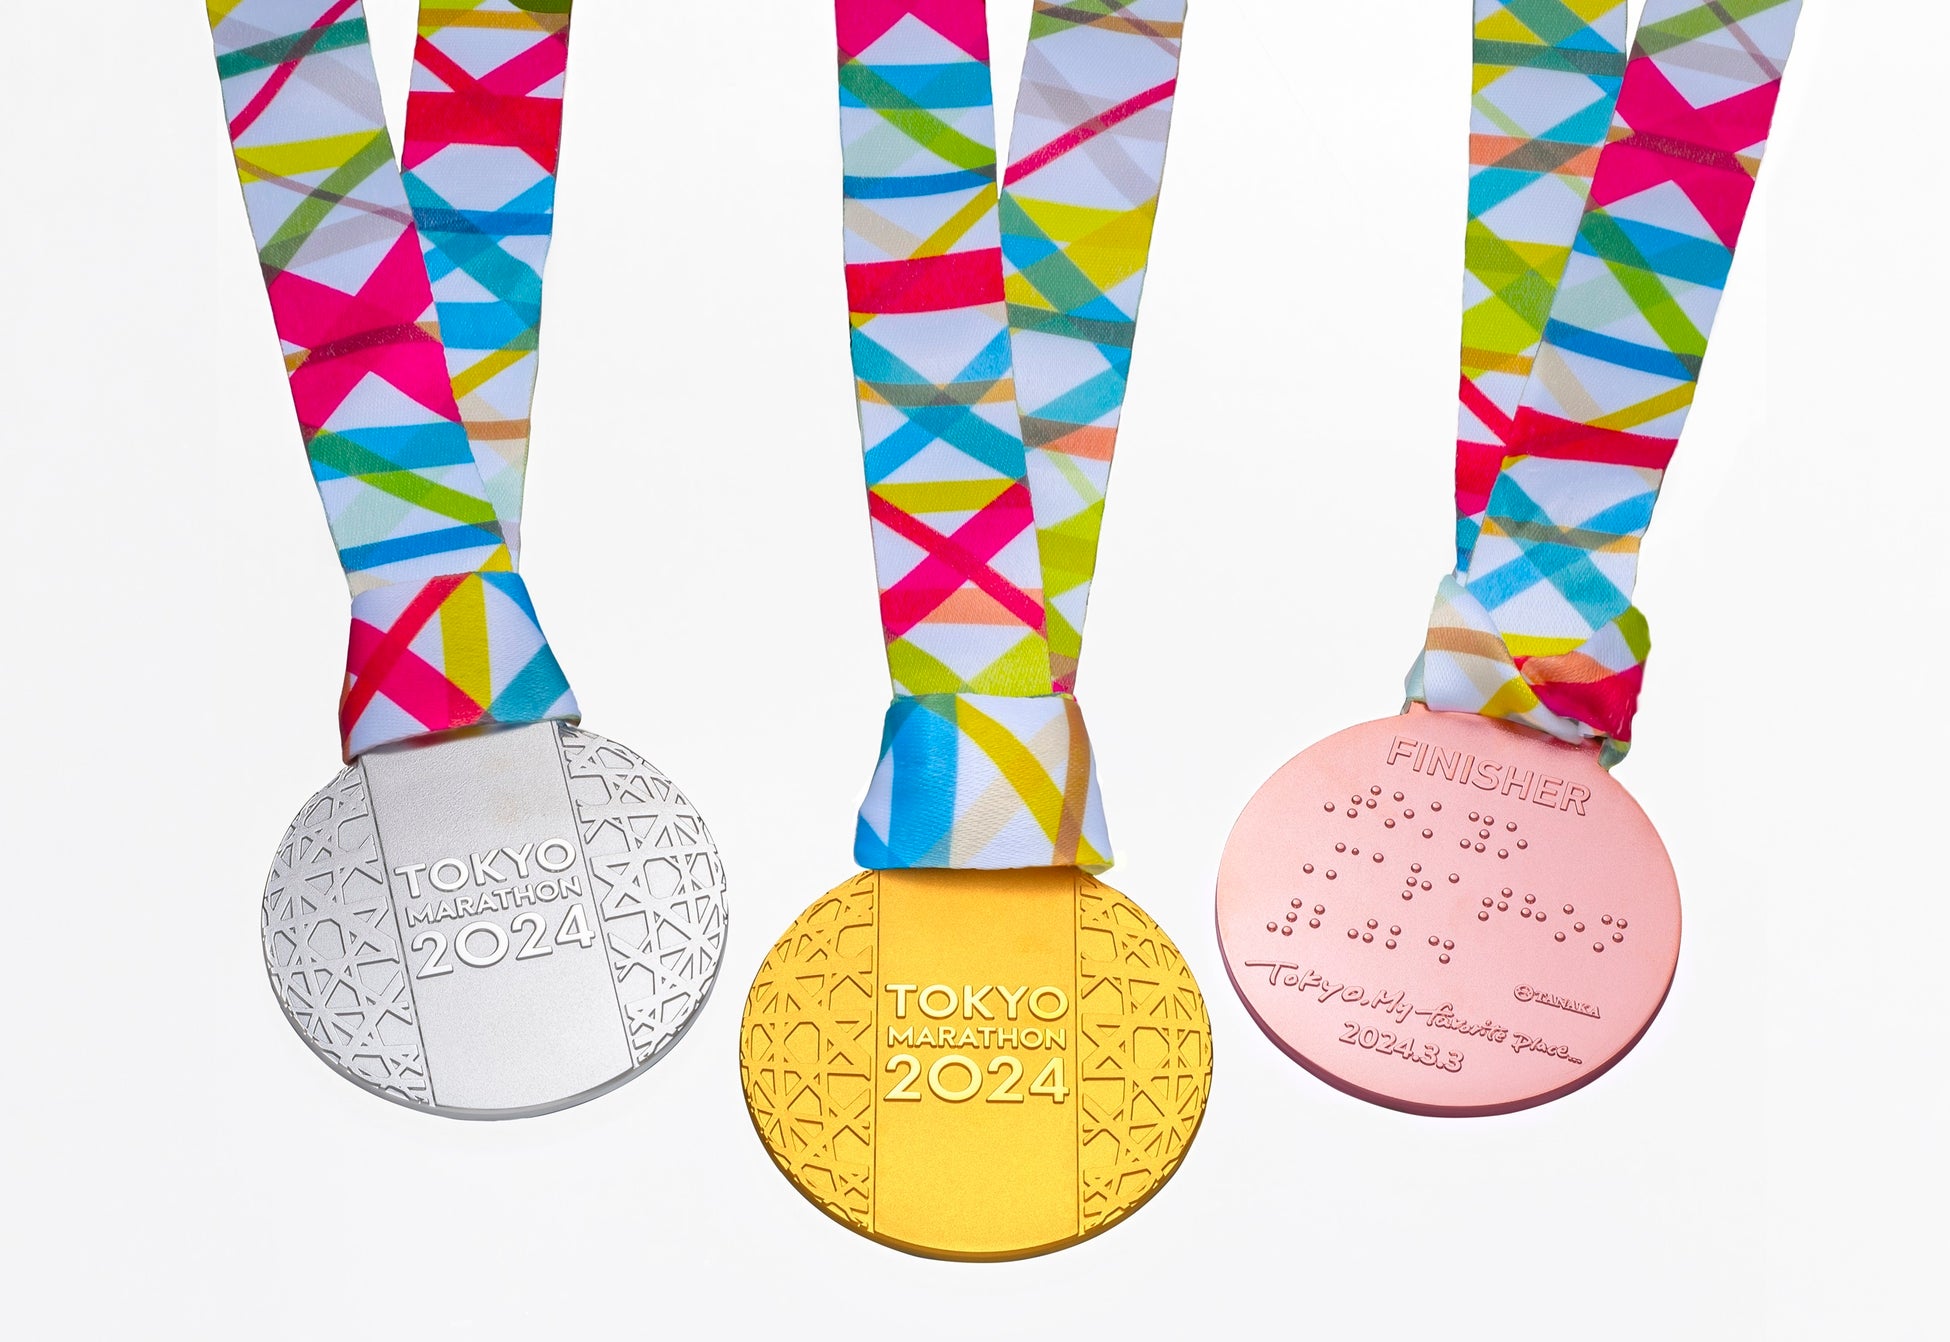 「東京マラソン2024」の表彰メダルを純金・純銀・純銅で提供